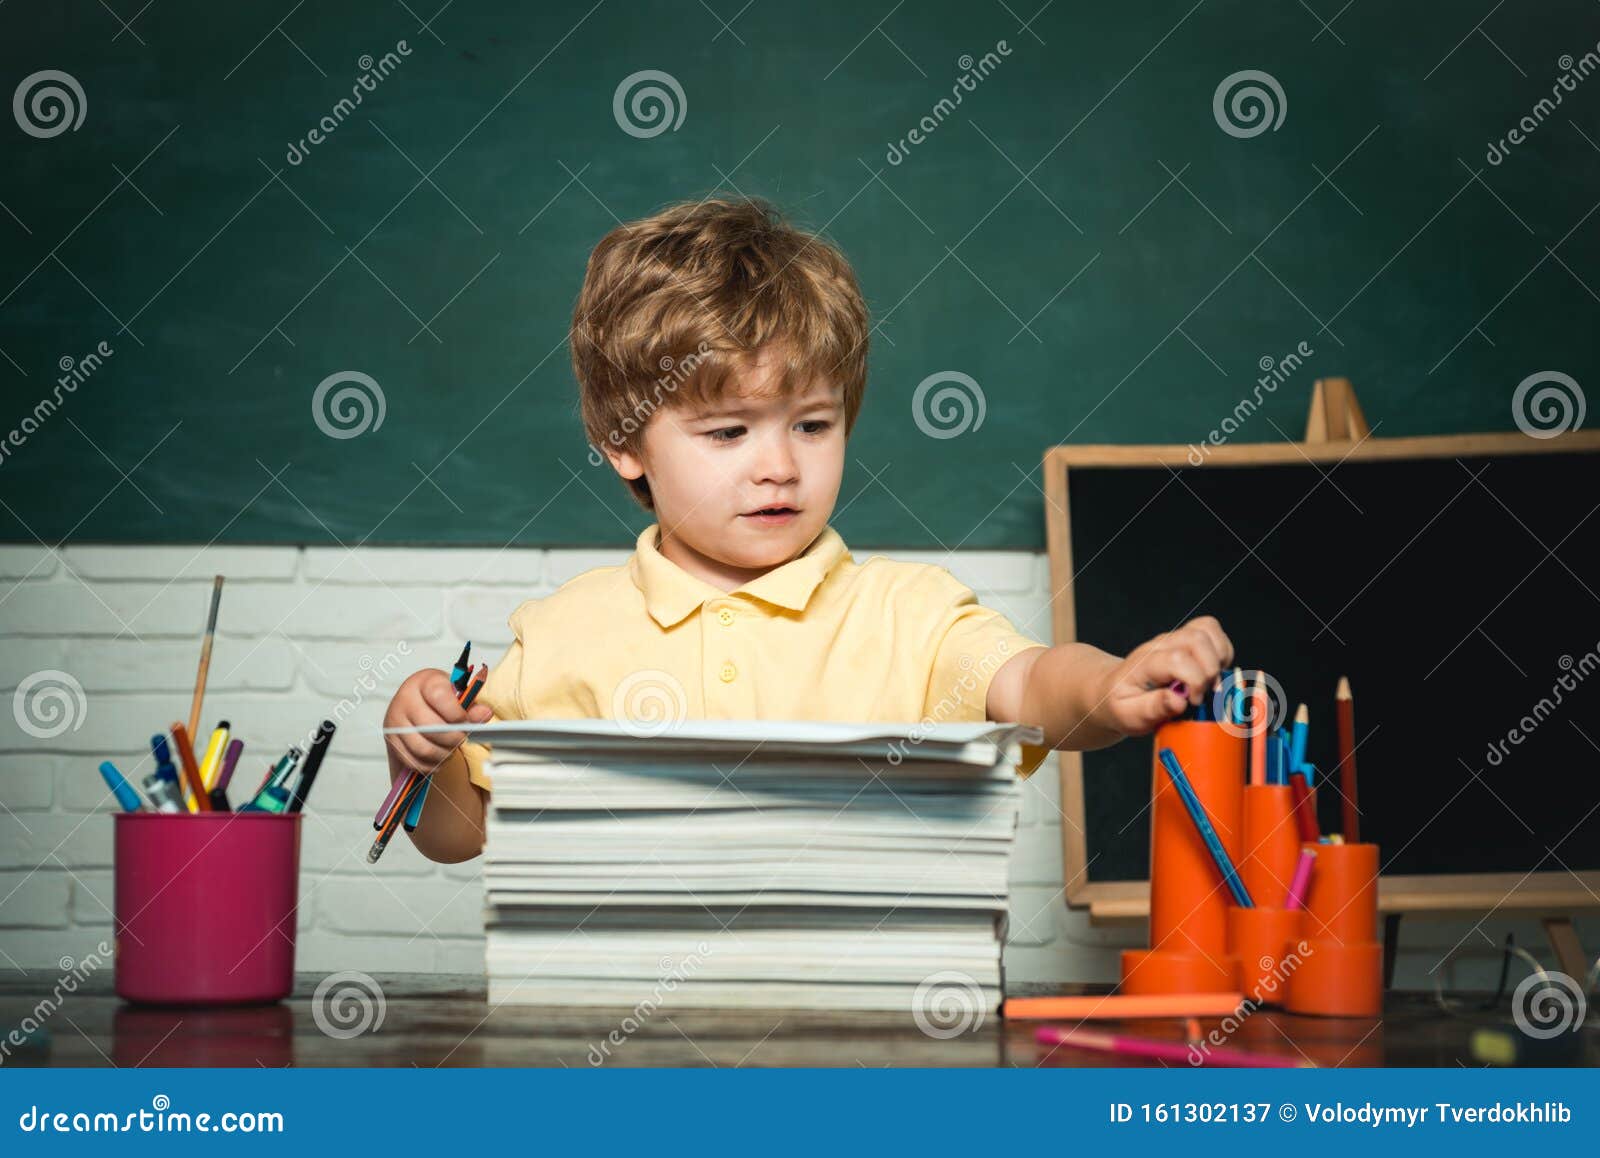 Cute Little Preschool Kid Boy Study in a Classroom. Funny Little ...